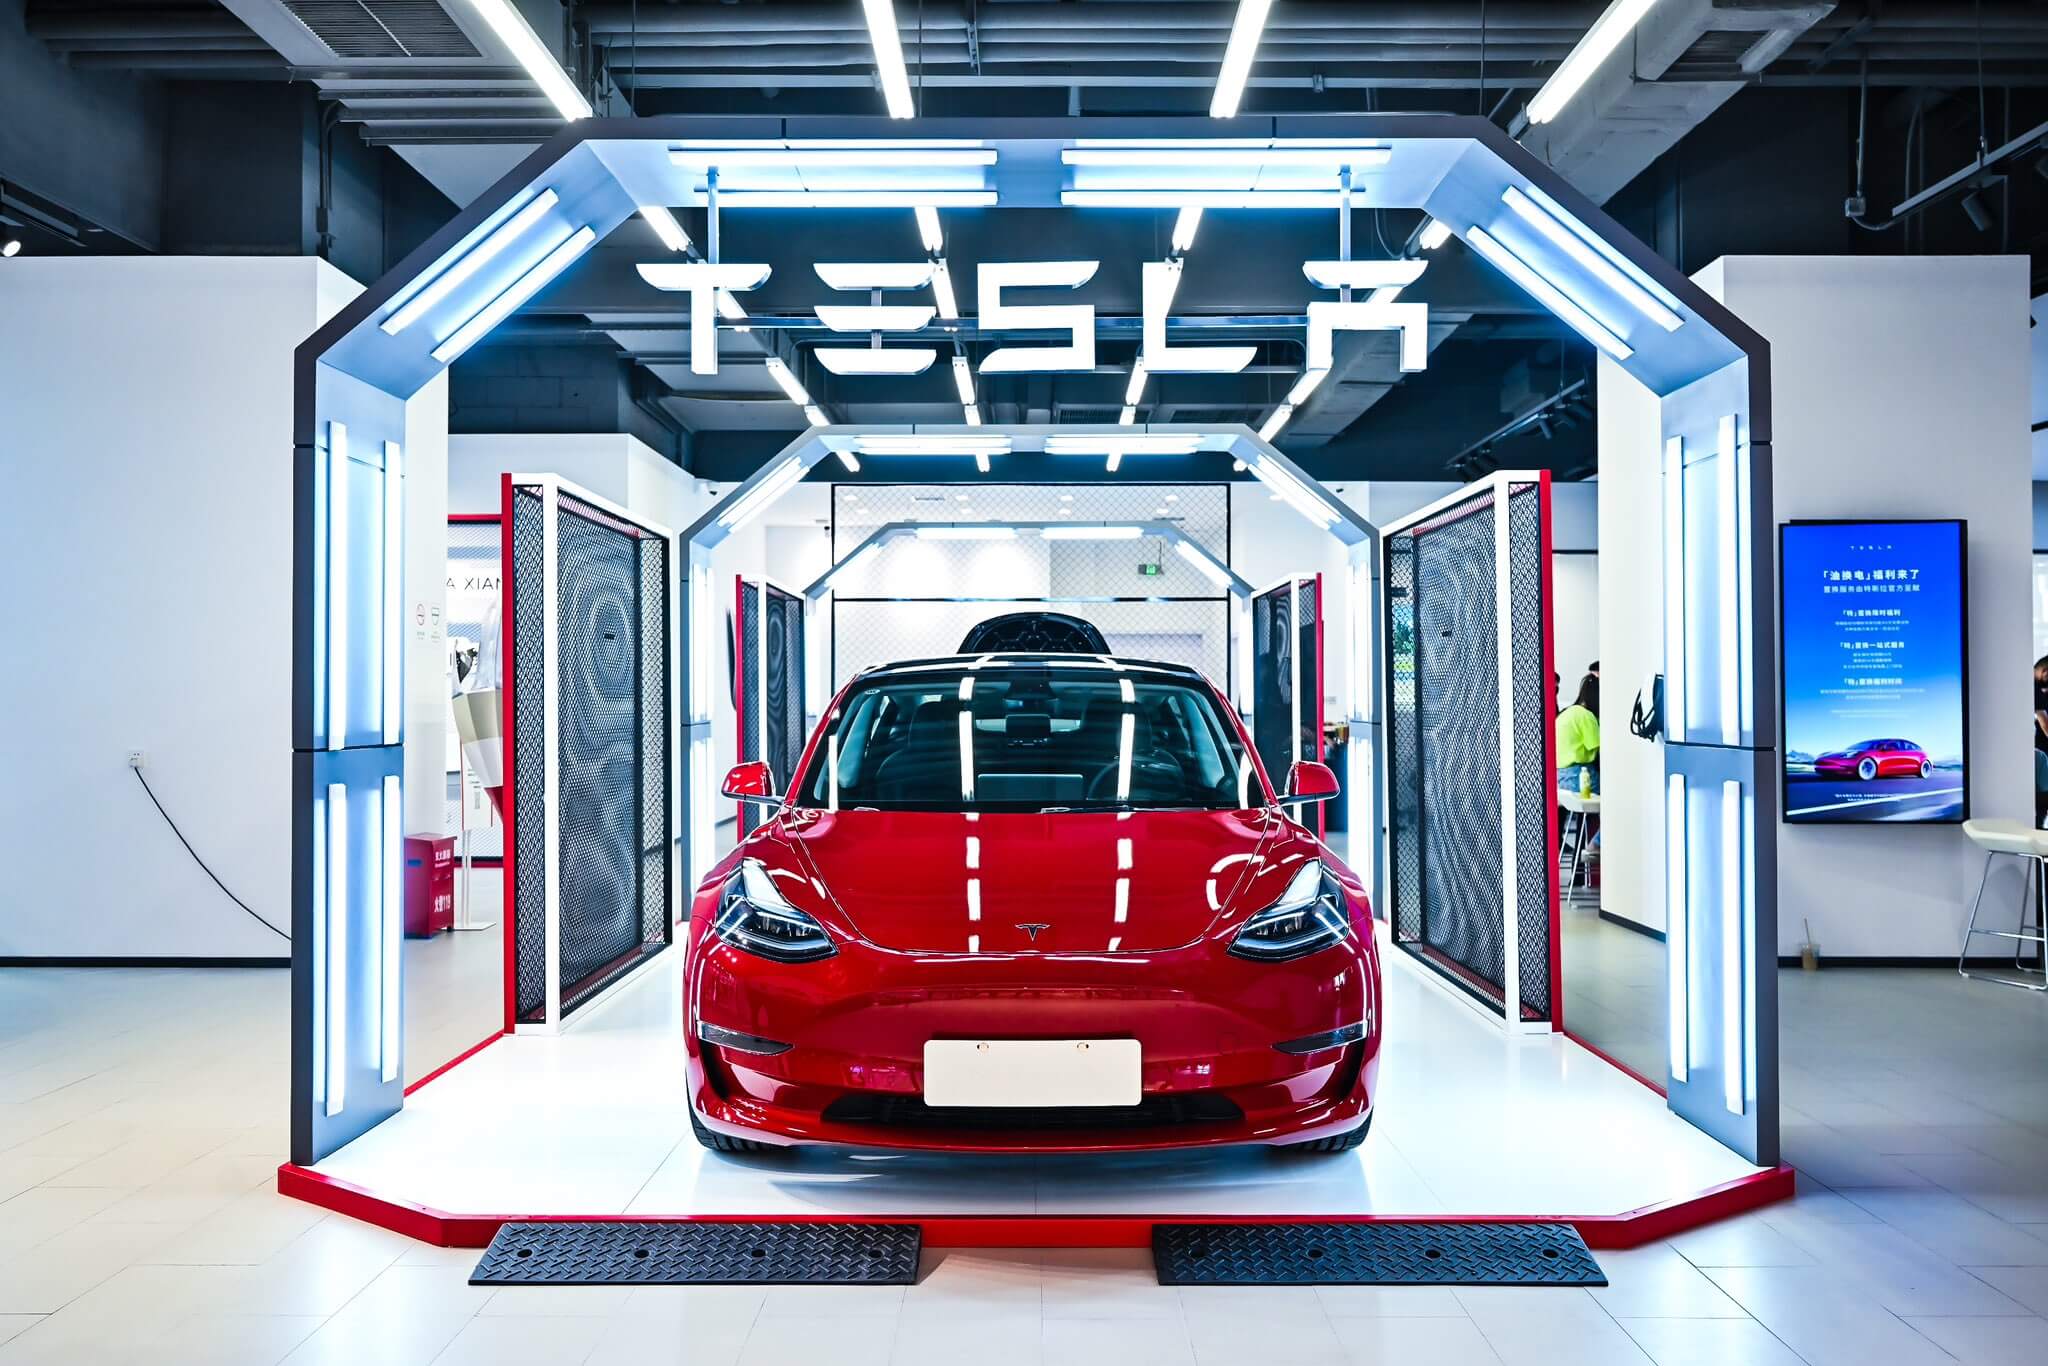 سجلت Tesla China 10600 تسجيل تأمين في الأسبوع الرابع من يوليو